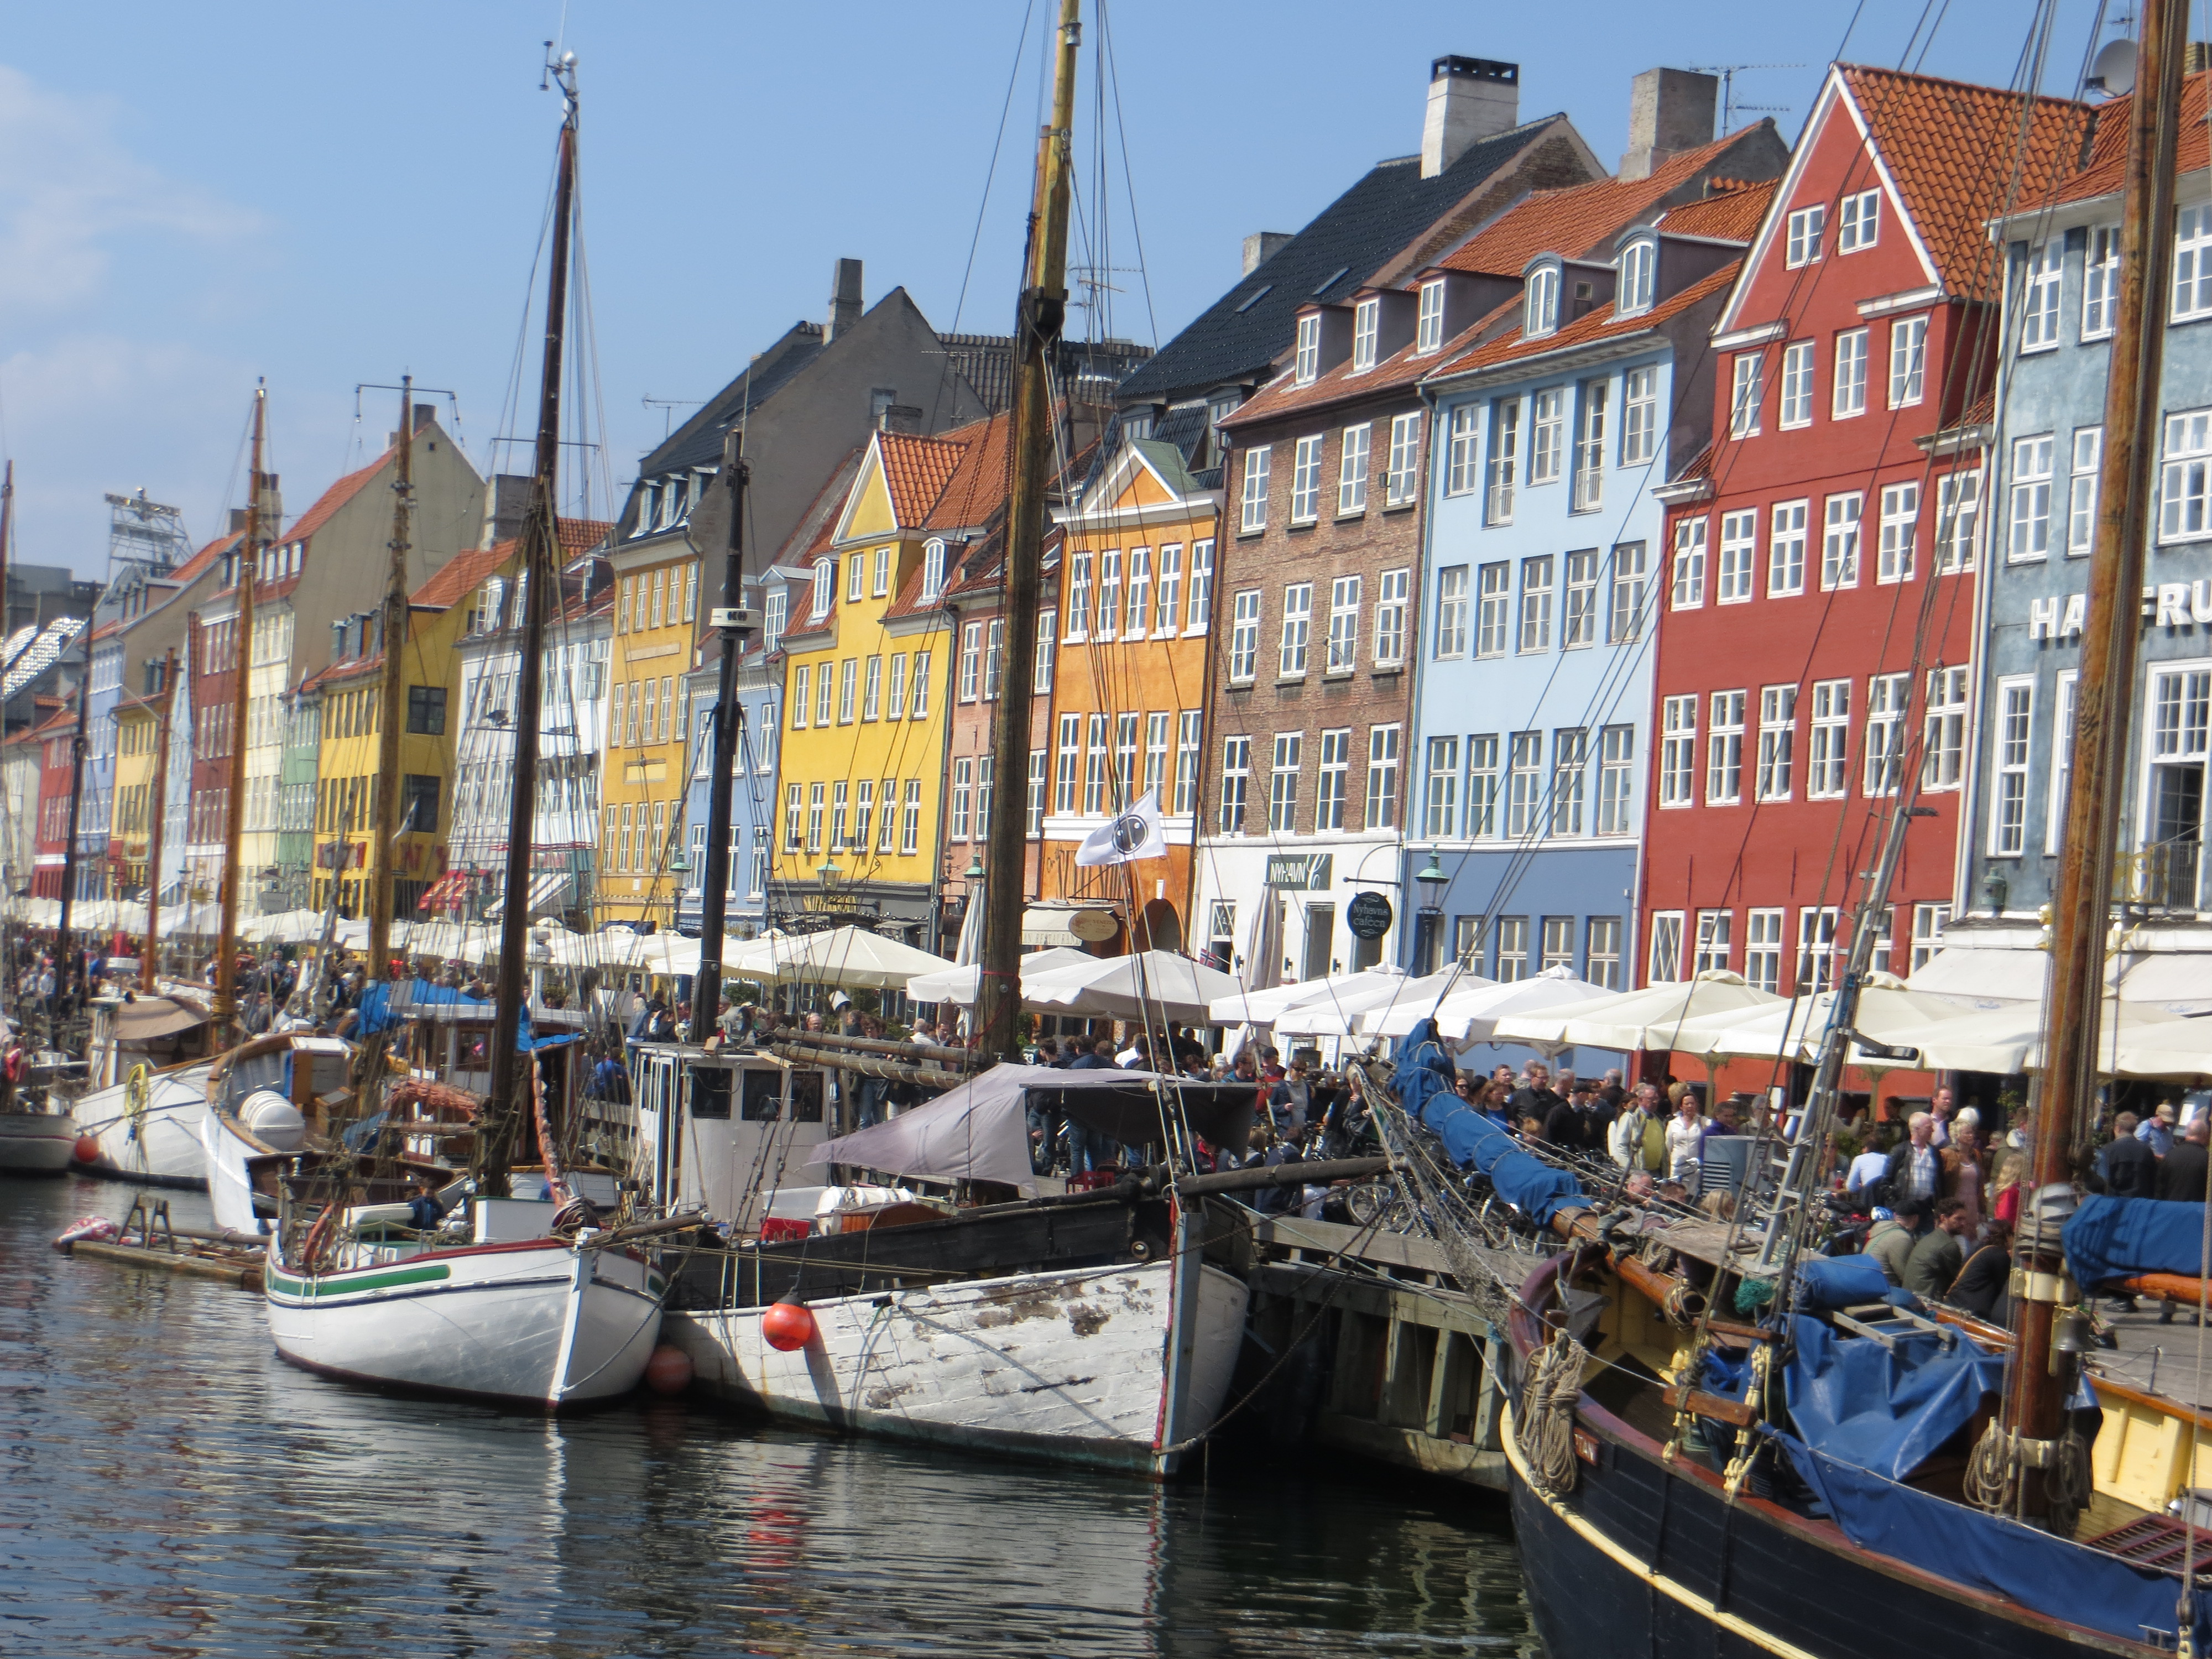 Le quartier du vieux port à Copenhague est très animé.
Une petite bière sur la jetée ?